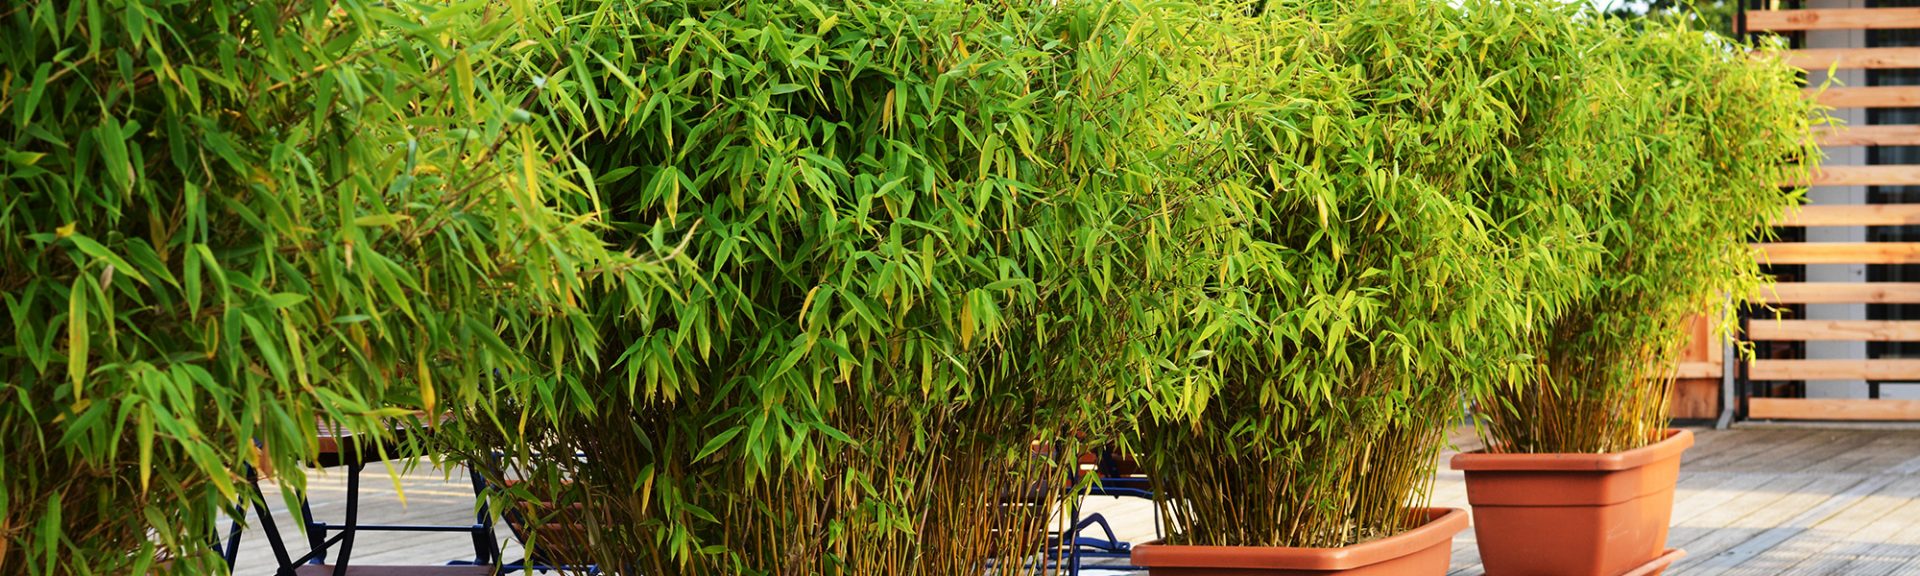 Bambous dans jardinière sur terrasse